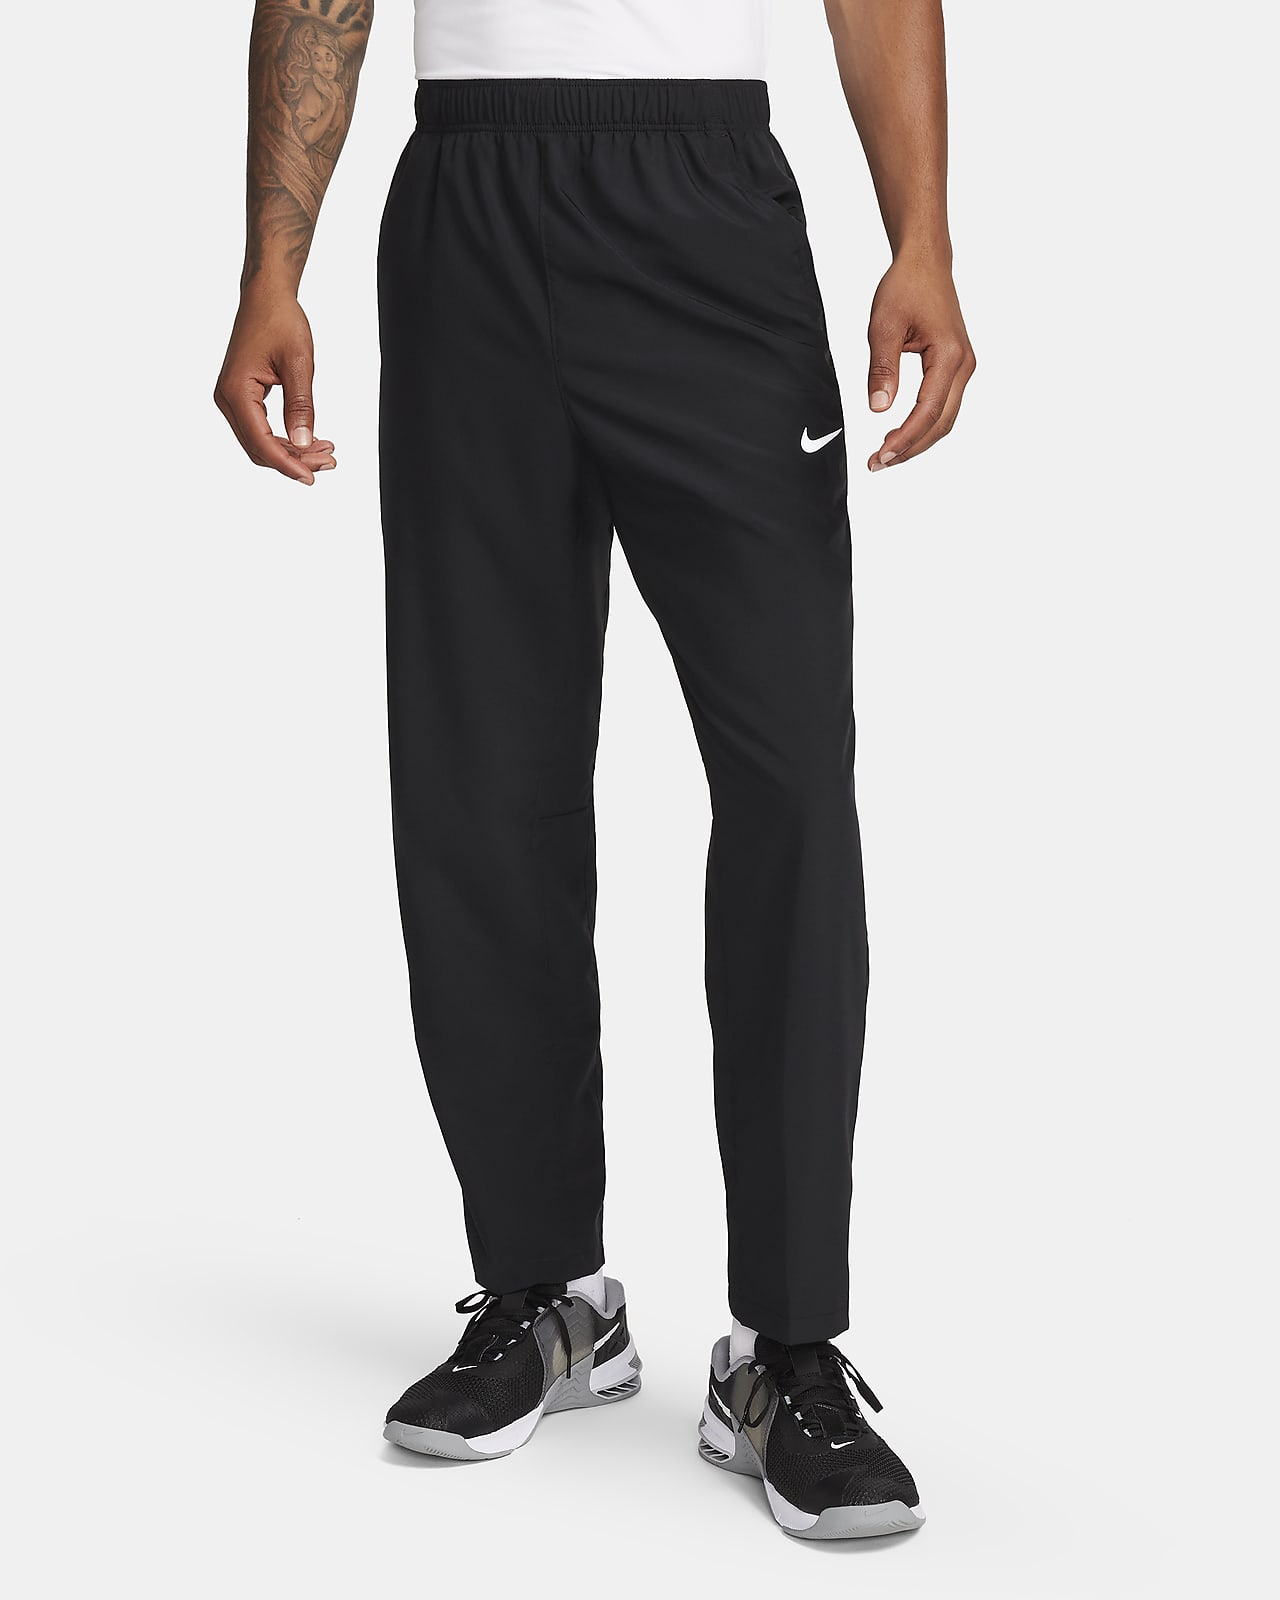 Pants Dri-FIT versátiles con dobladillo abierto para hombre Nike Form